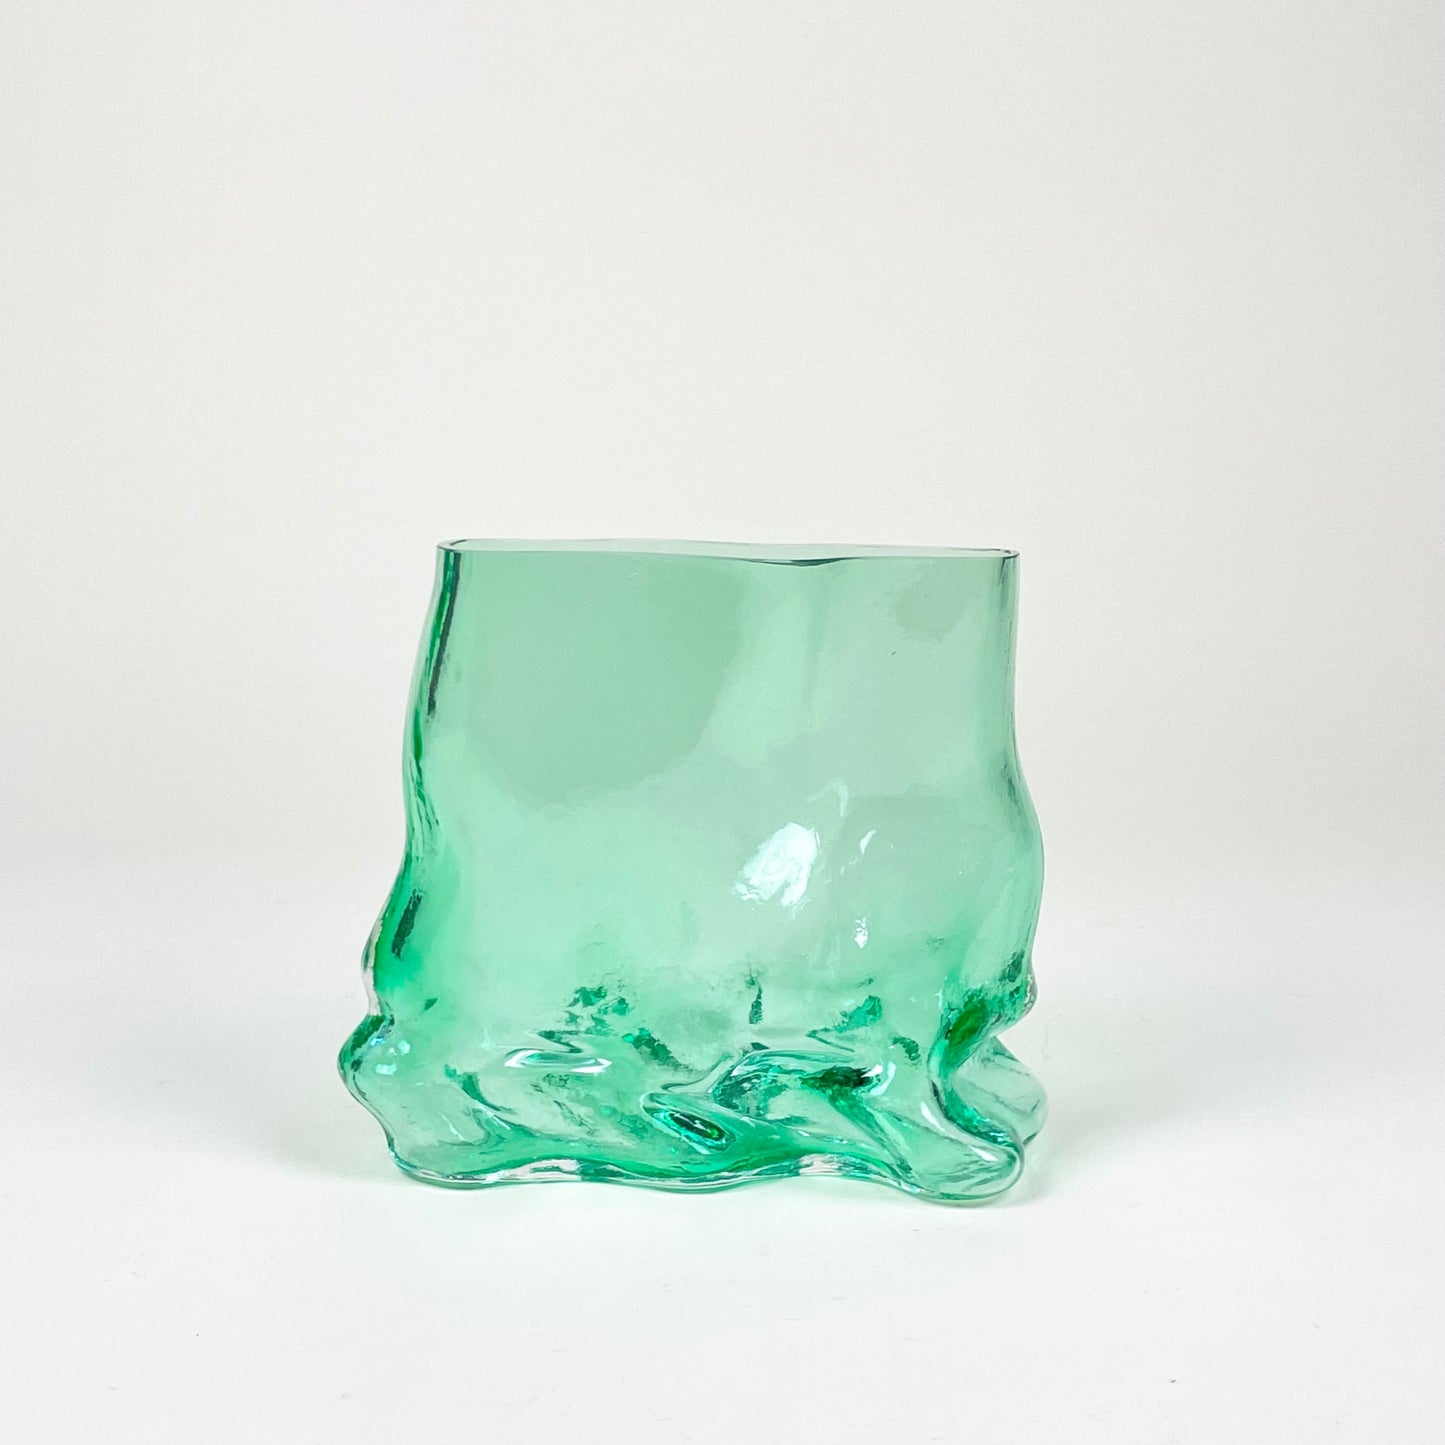 Glass vase by Lisa Reiser